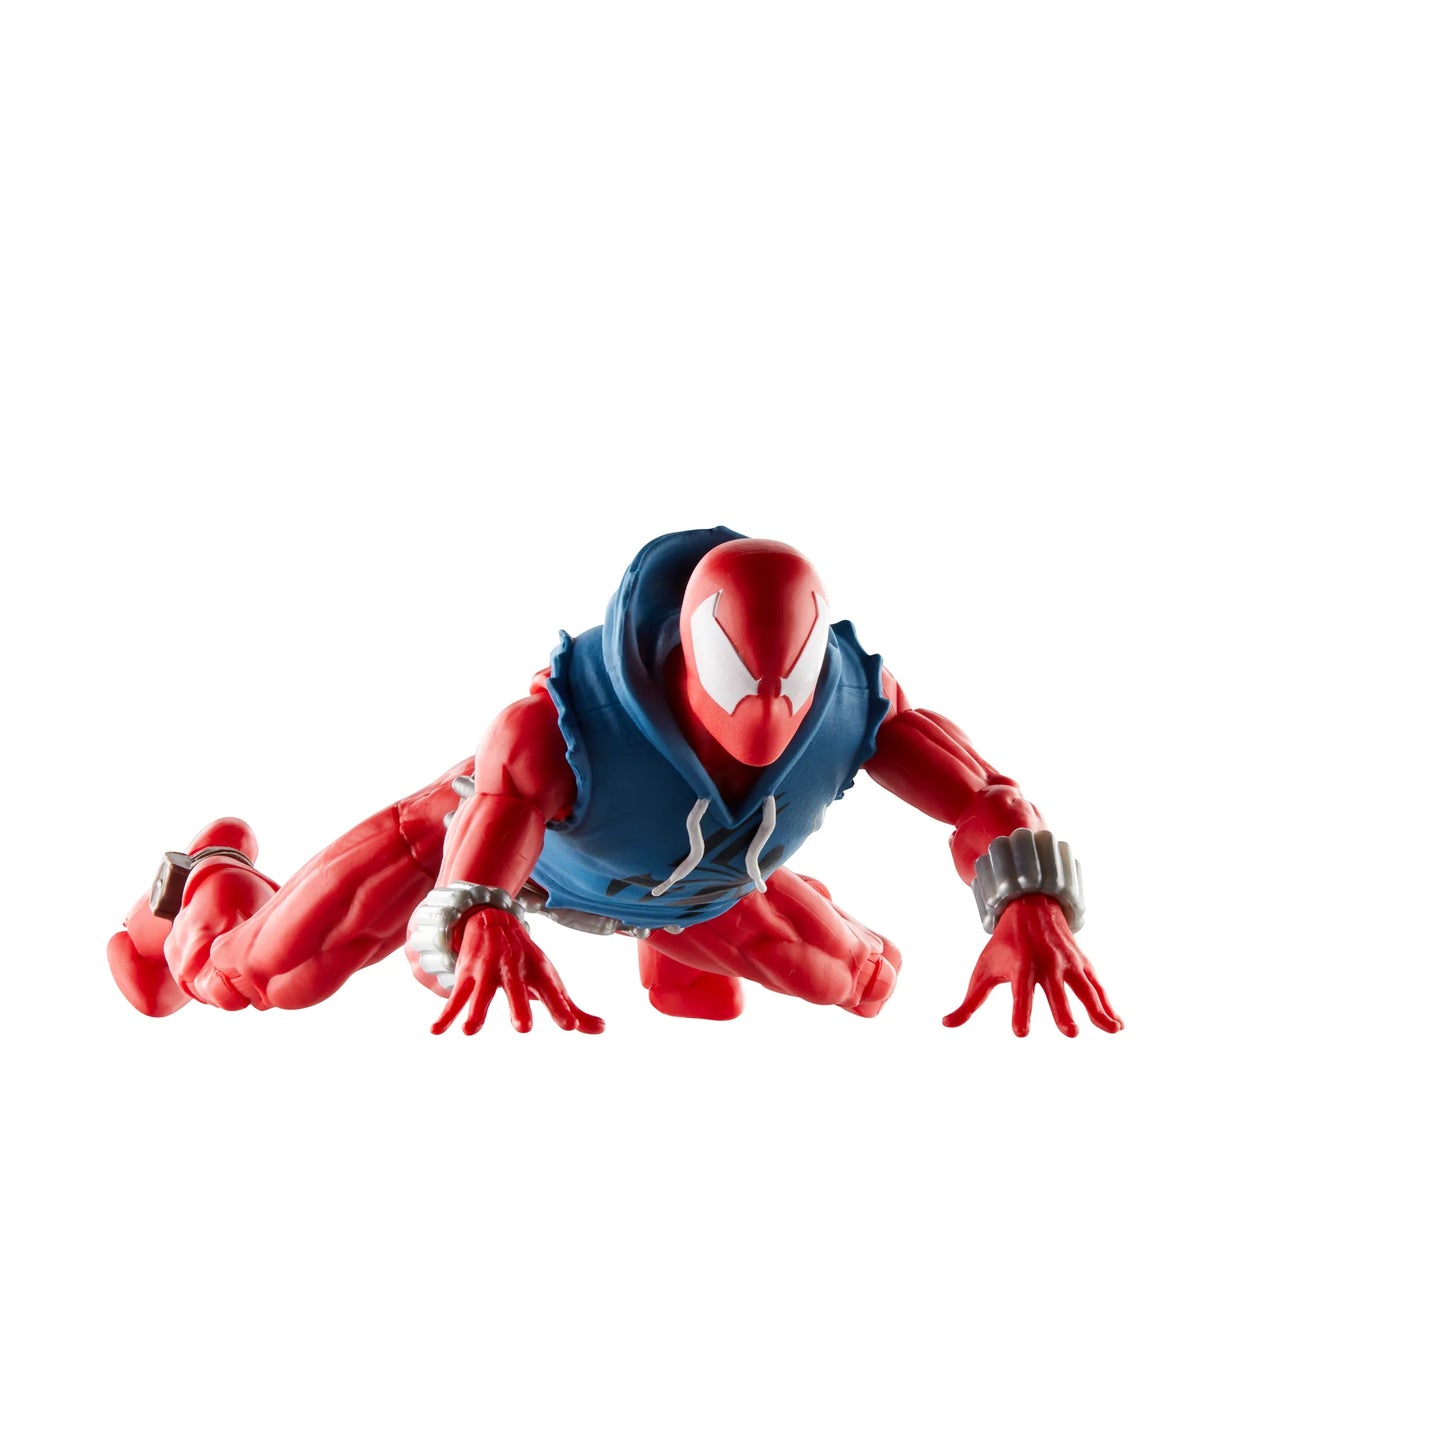 IMPORT STOCK Spider-Man Marvel Legends Comic 6-inch Scarlet Spider Action Figure